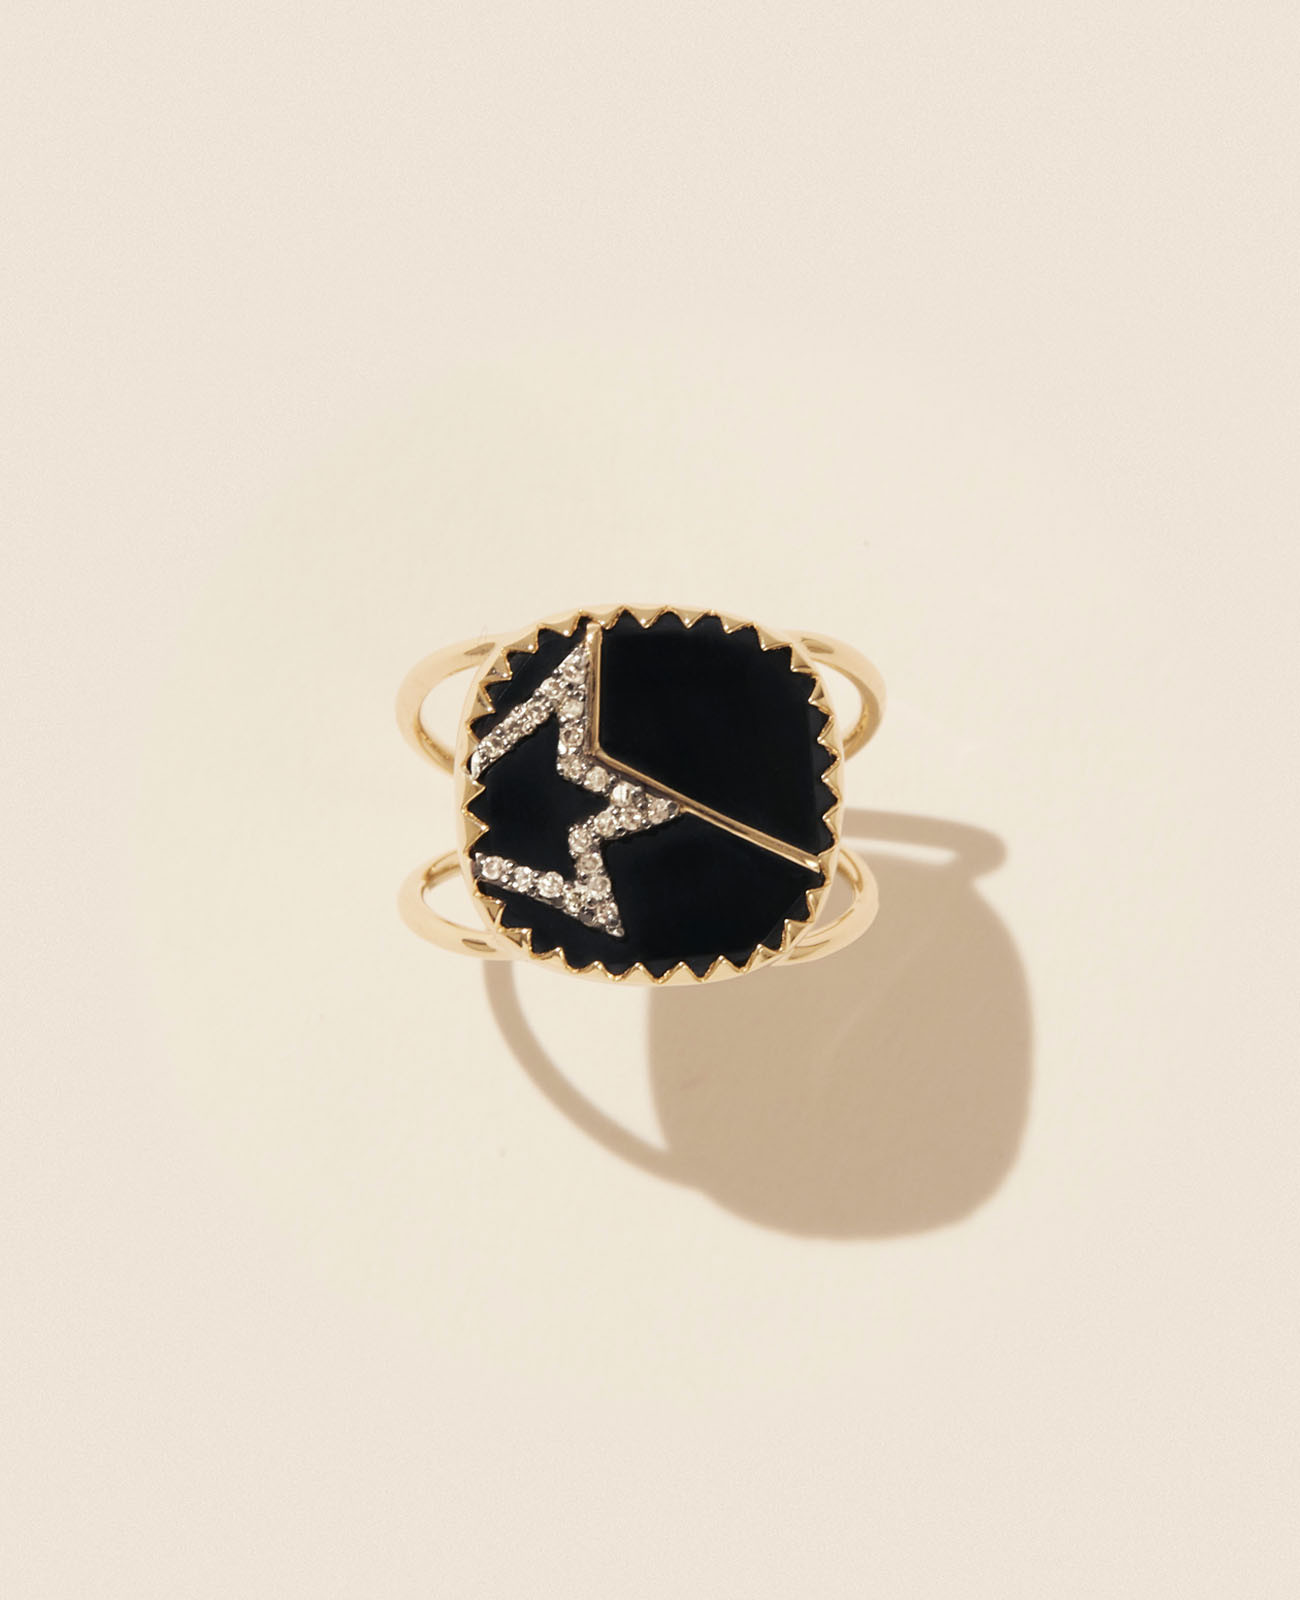 VARDA N°2 BLACK DIAMOND ring pascale monvoisin jewelry paris